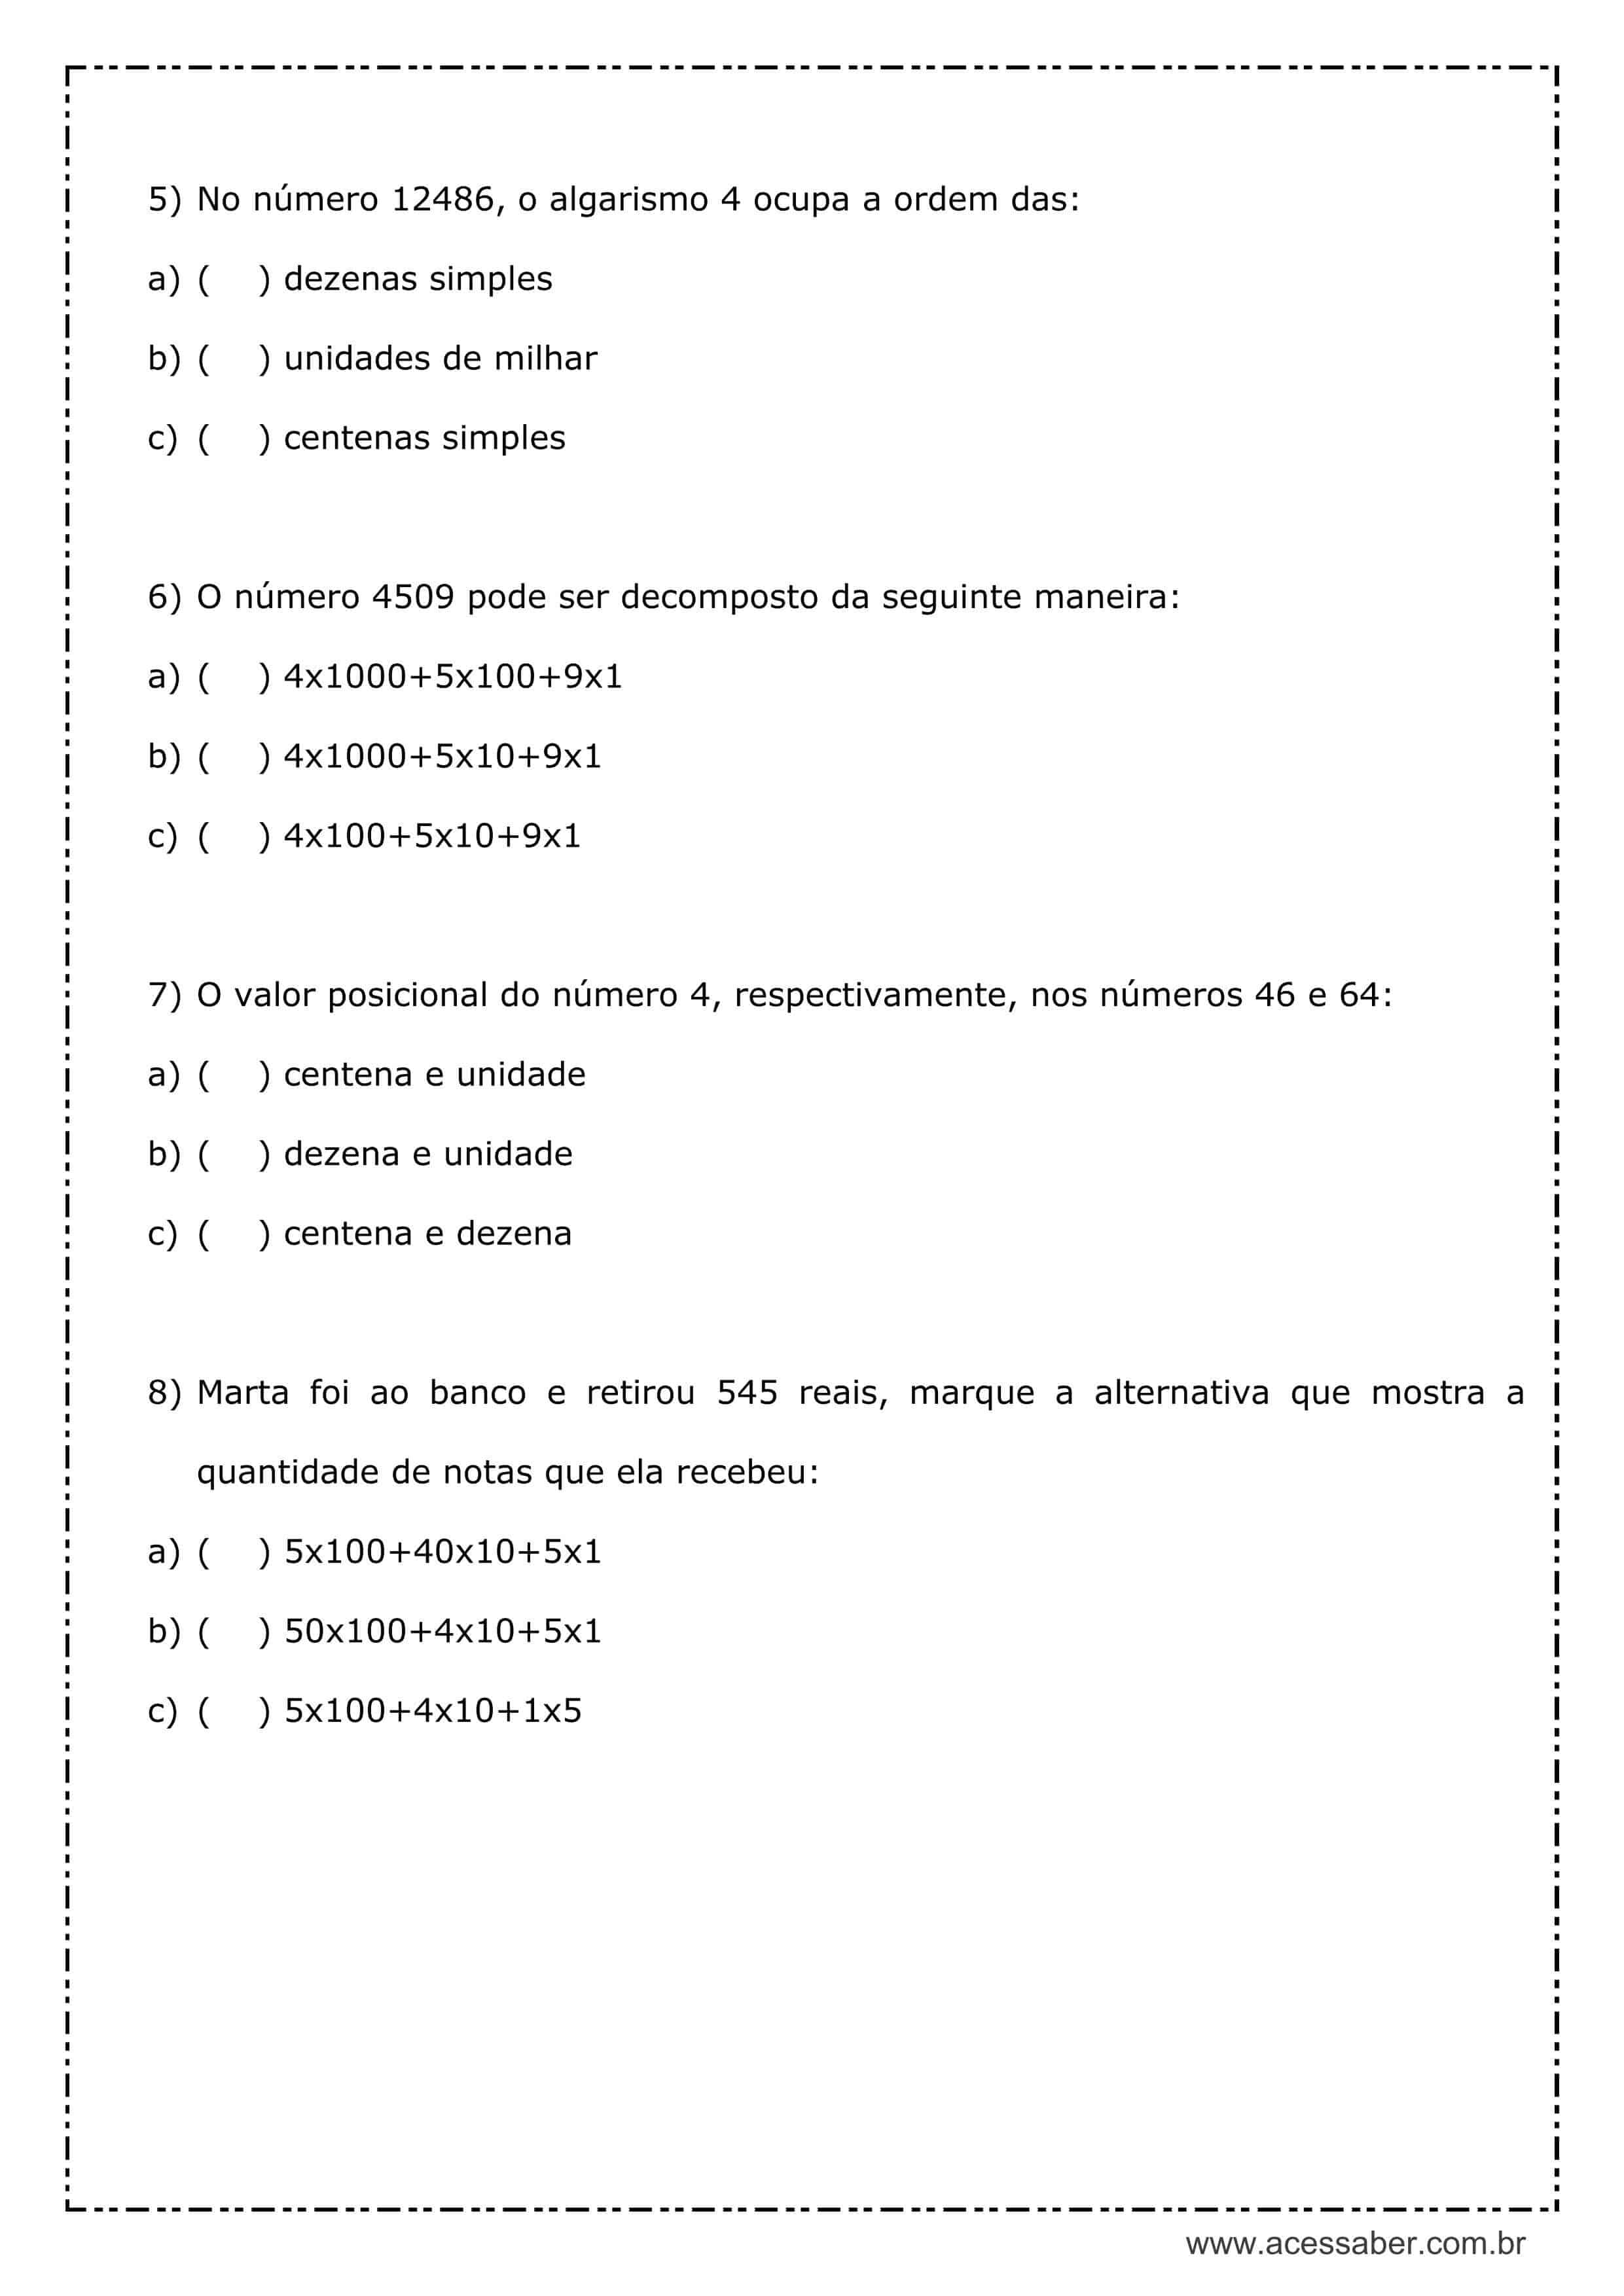 ATIVIDADE DE FIXAÇÃO DE MATEMÁTICA - Nº 5 - COMPARAÇÃO DE NUMEROS DECIMAIS  